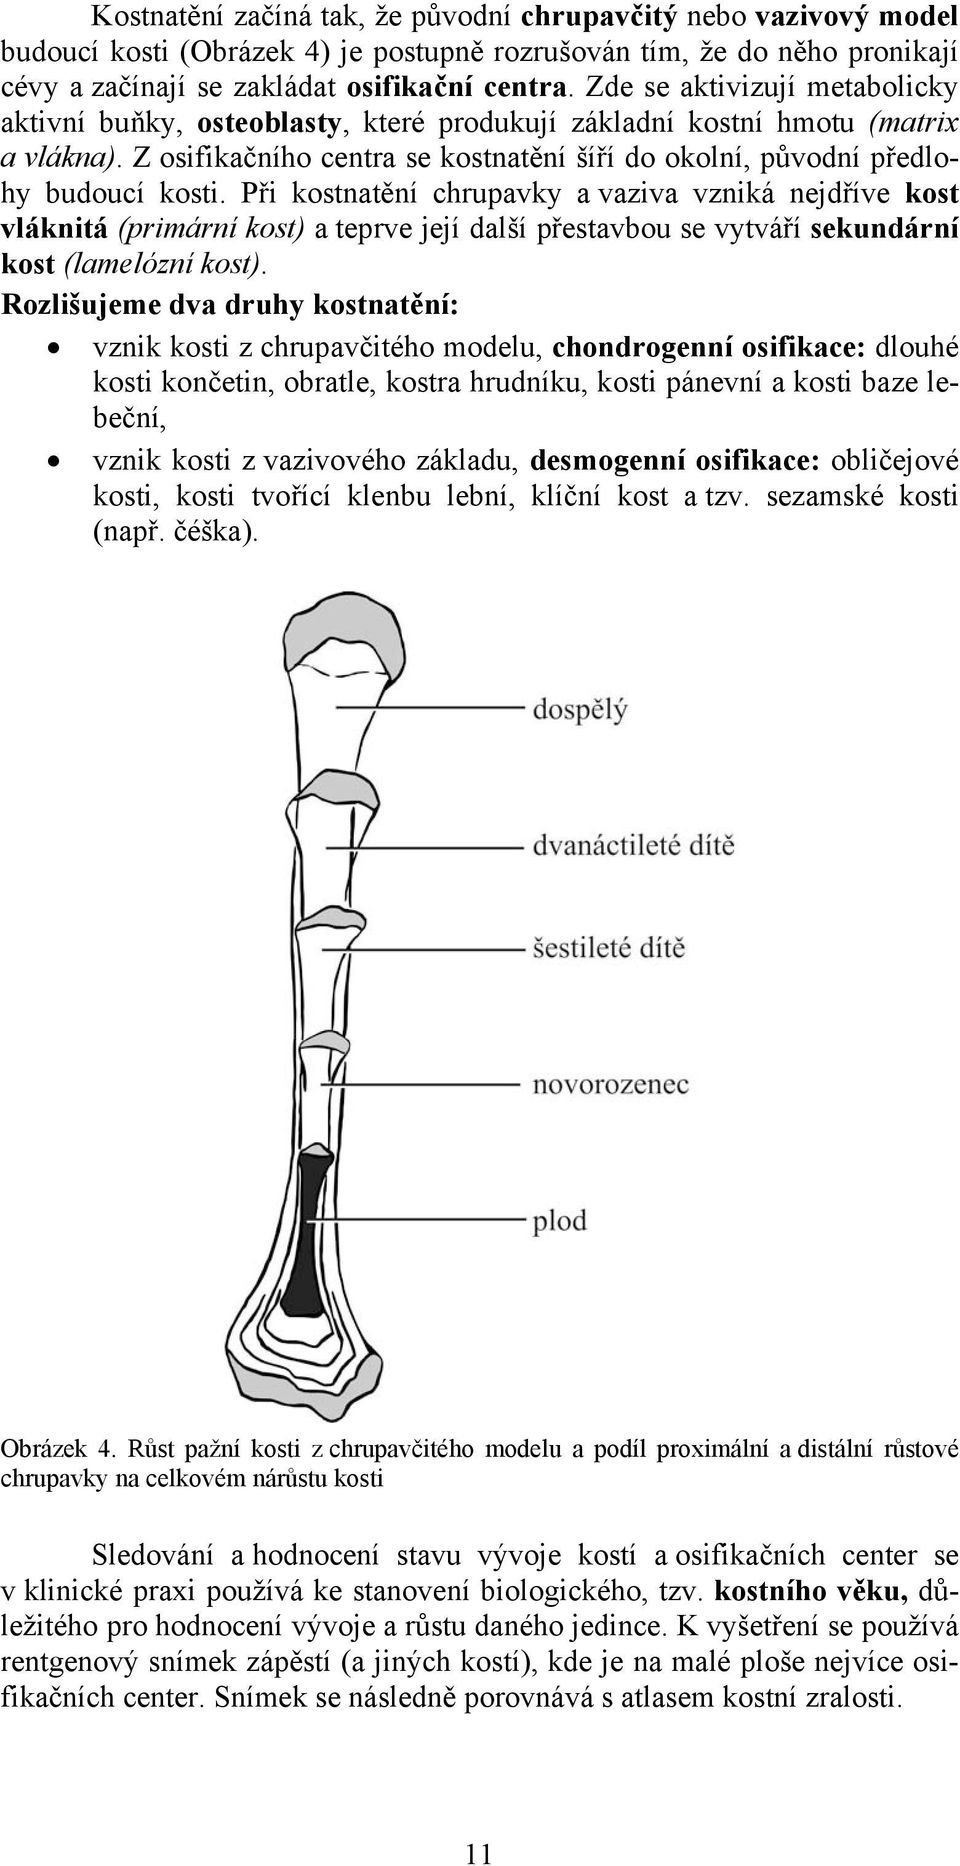 Při kostnatění chrupavky a vaziva vzniká nejdříve kost vláknitá (primární kost) a teprve její další přestavbou se vytváří sekundární kost (lamelózní kost).